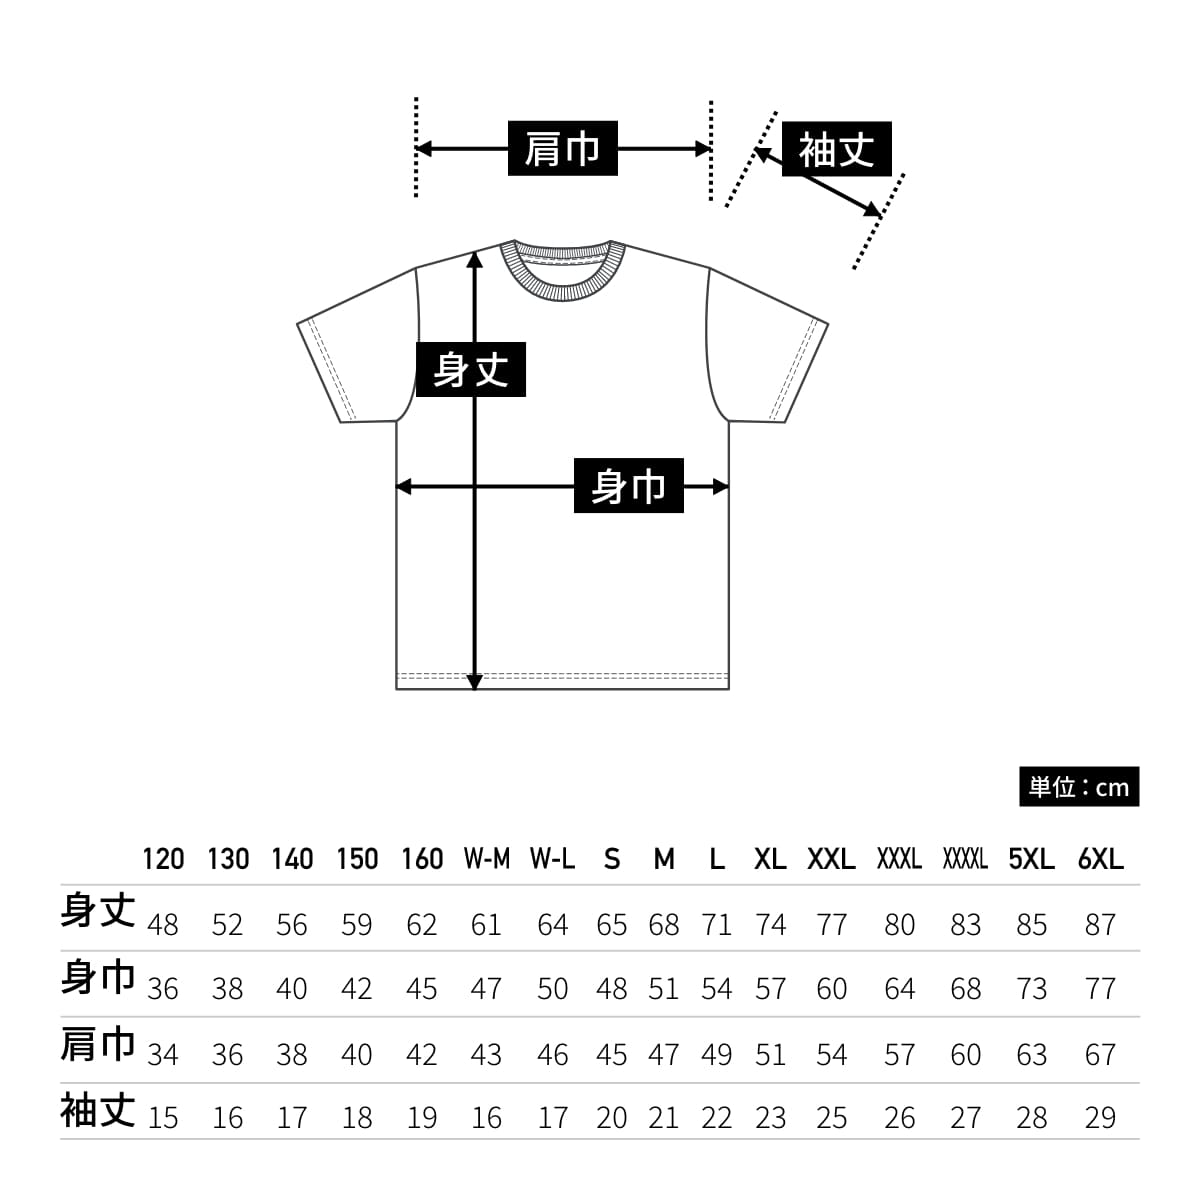 4.1オンス ドライアスレチック Tシャツ | レディース | 1枚 | 5900-03 | ライムグリーン